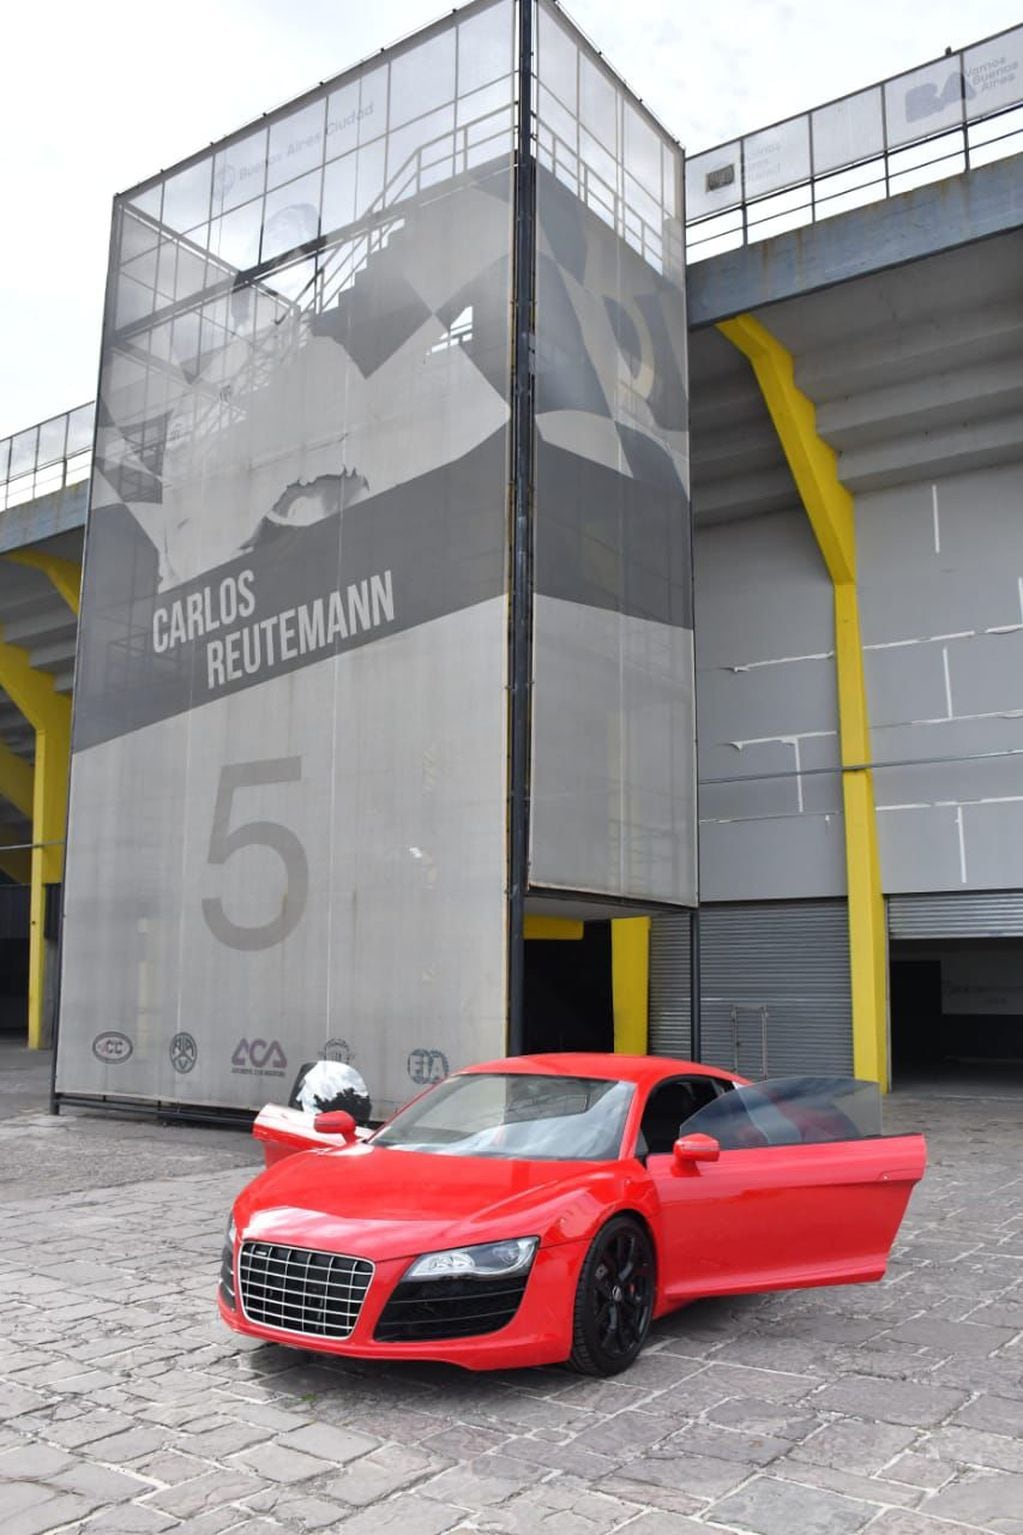 El Audi R8 que fue incautado por la Policía será rematado y lo recaudado se donará. Gentileza.